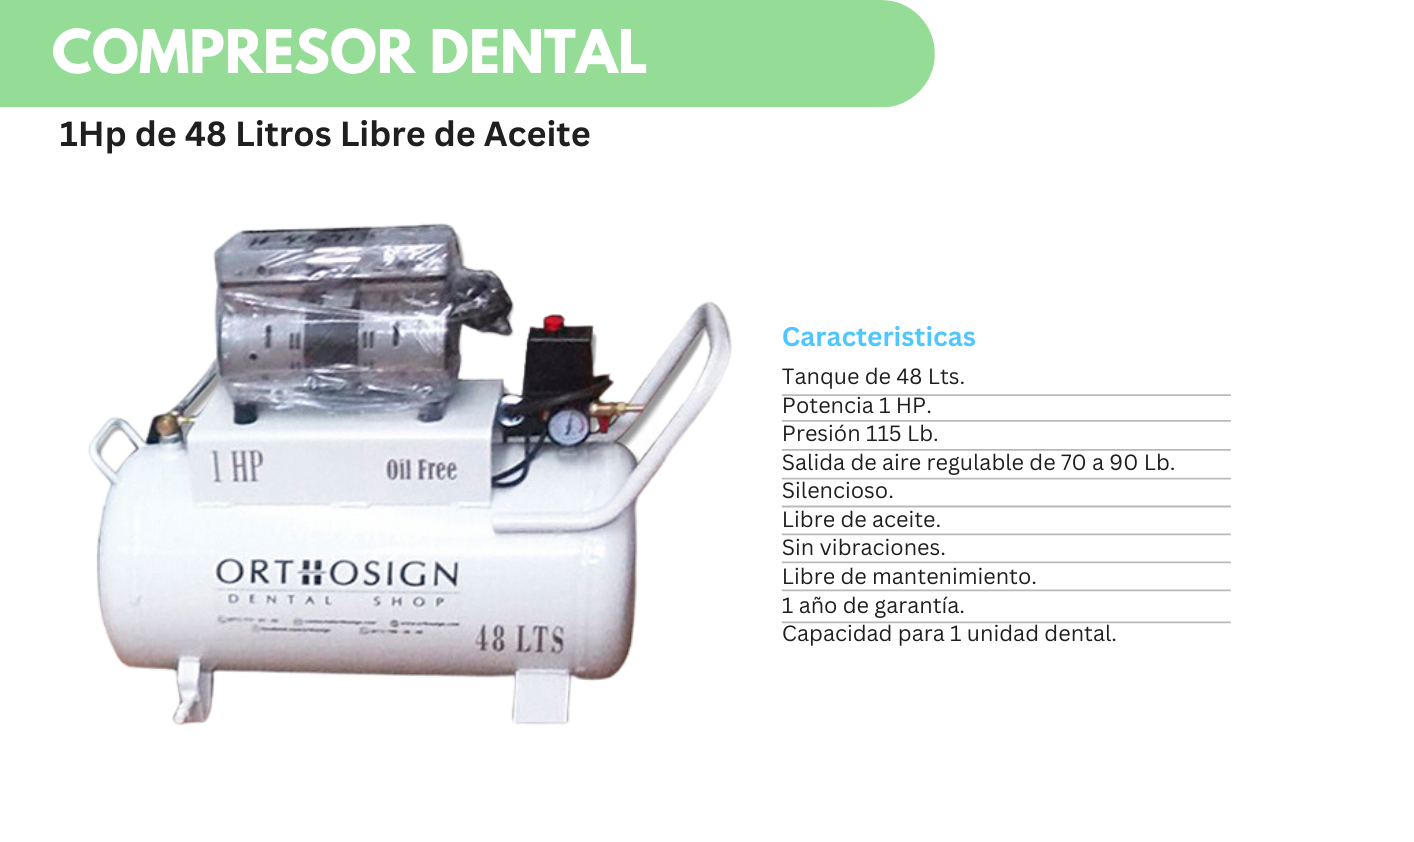 Compresor Dental 1HP Orthosign